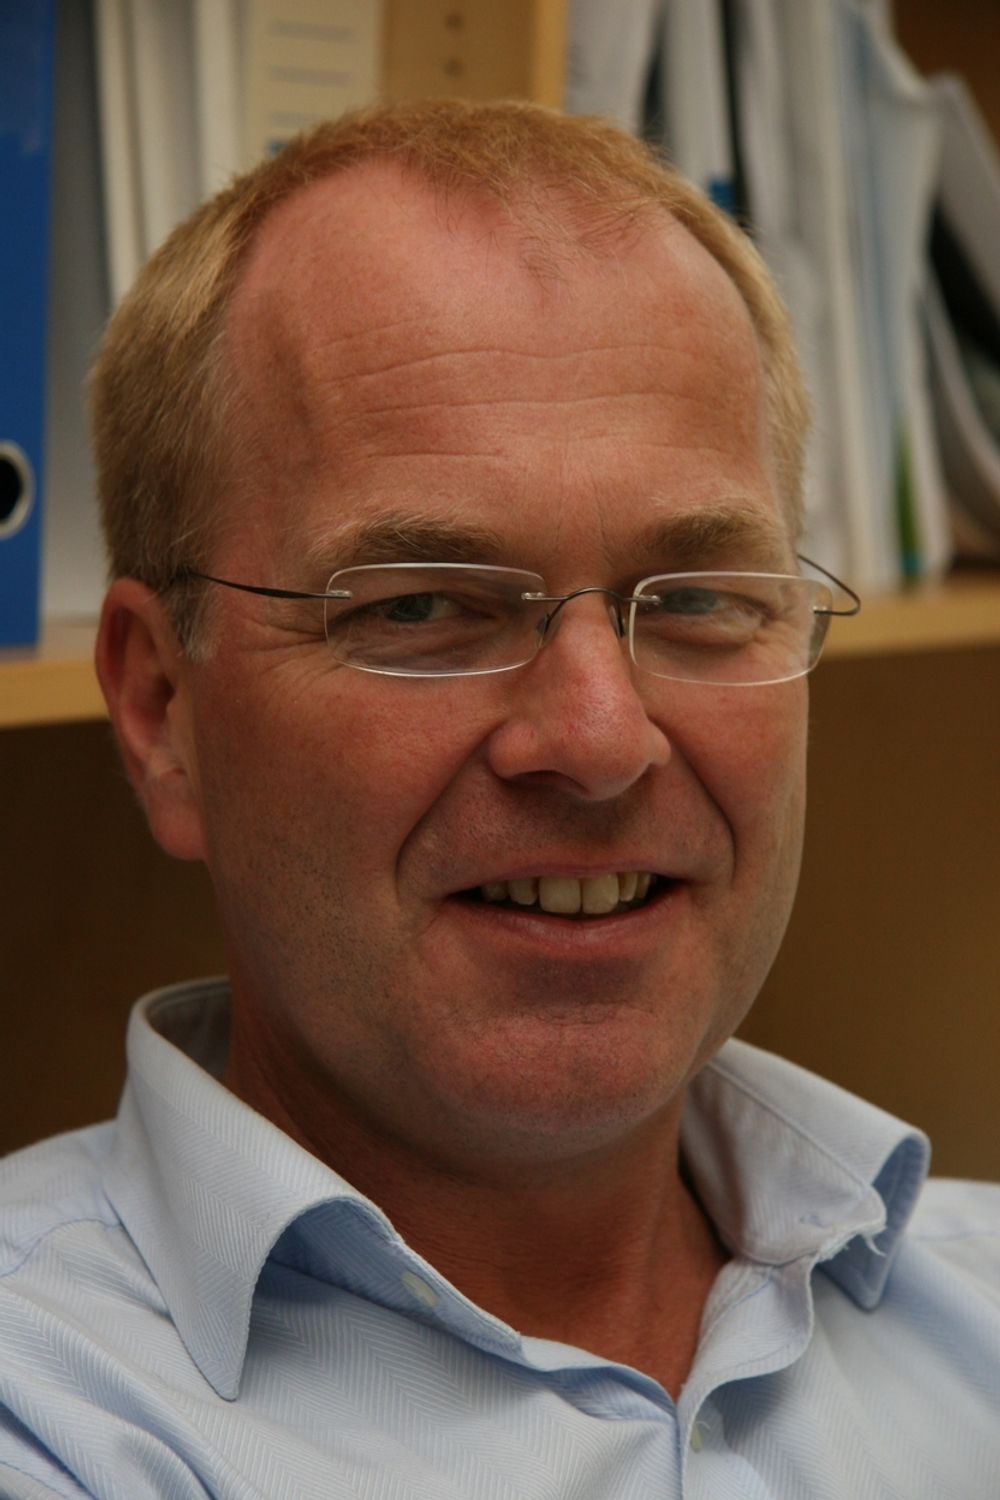 INVITERER: FoU-direktør Bjørne Grimsrud i Statsbygg inviterer Universitetet i Stavanger til BIM-samarbeid. Han mener alt ligger til rette for at oljebyen kan bli et nasjonalt kompetansesenter for BIM.